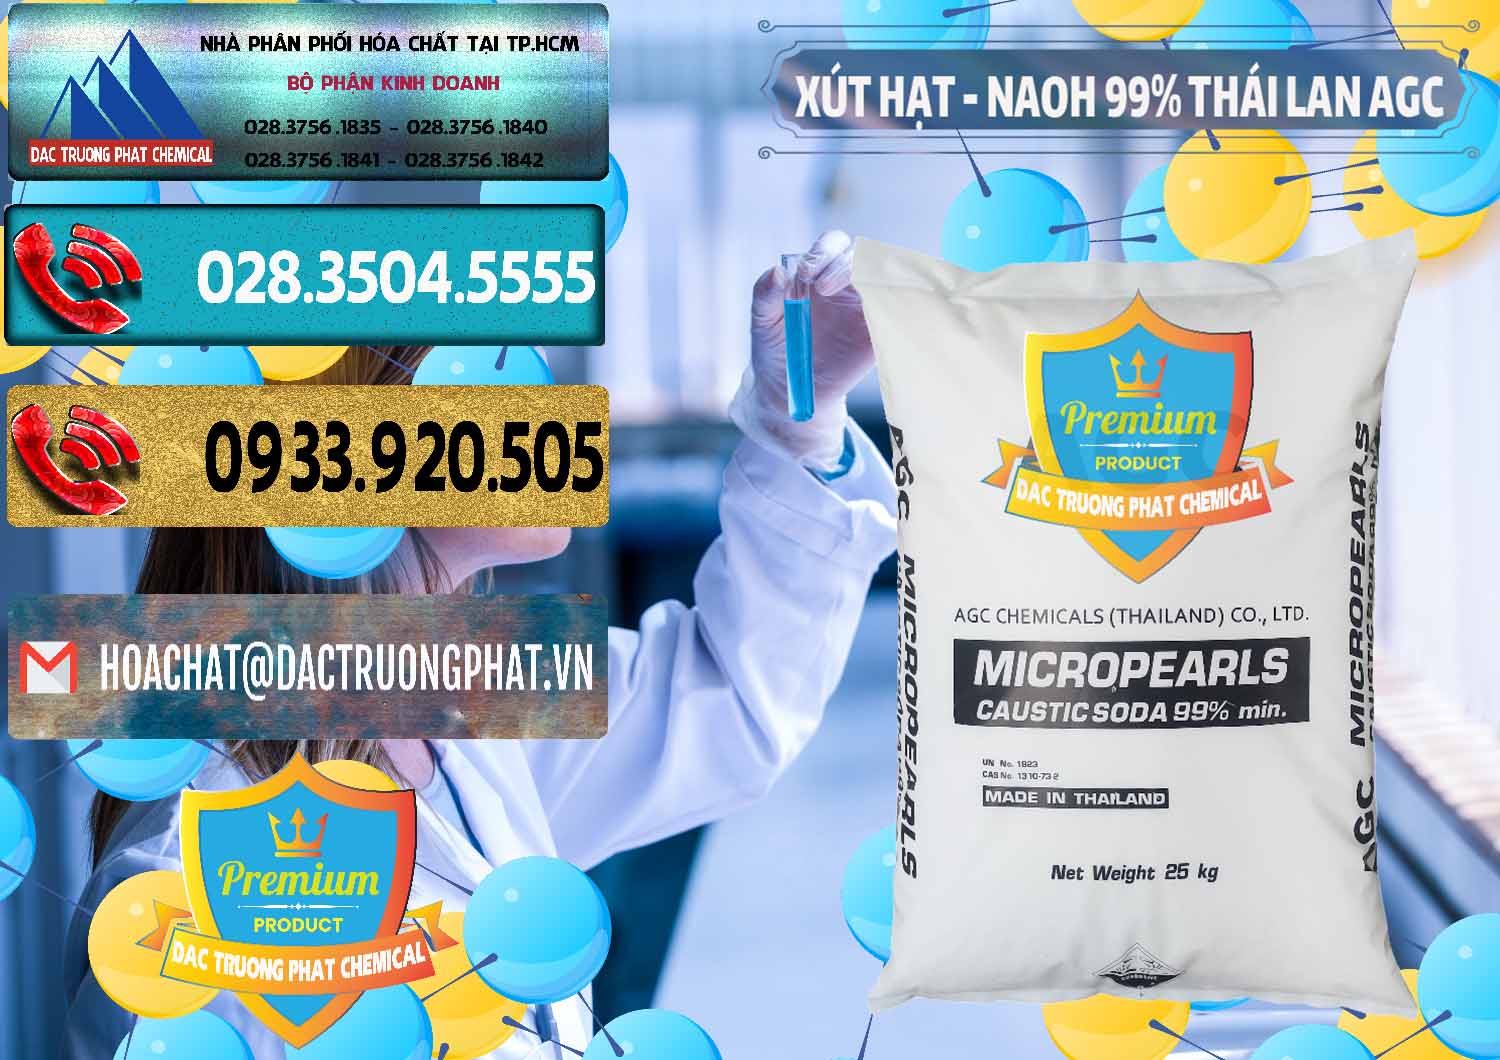 Cty chuyên bán - cung ứng Xút Hạt - NaOH Bột 99% AGC Thái Lan - 0168 - Nơi chuyên nhập khẩu & cung cấp hóa chất tại TP.HCM - hoachatdetnhuom.com